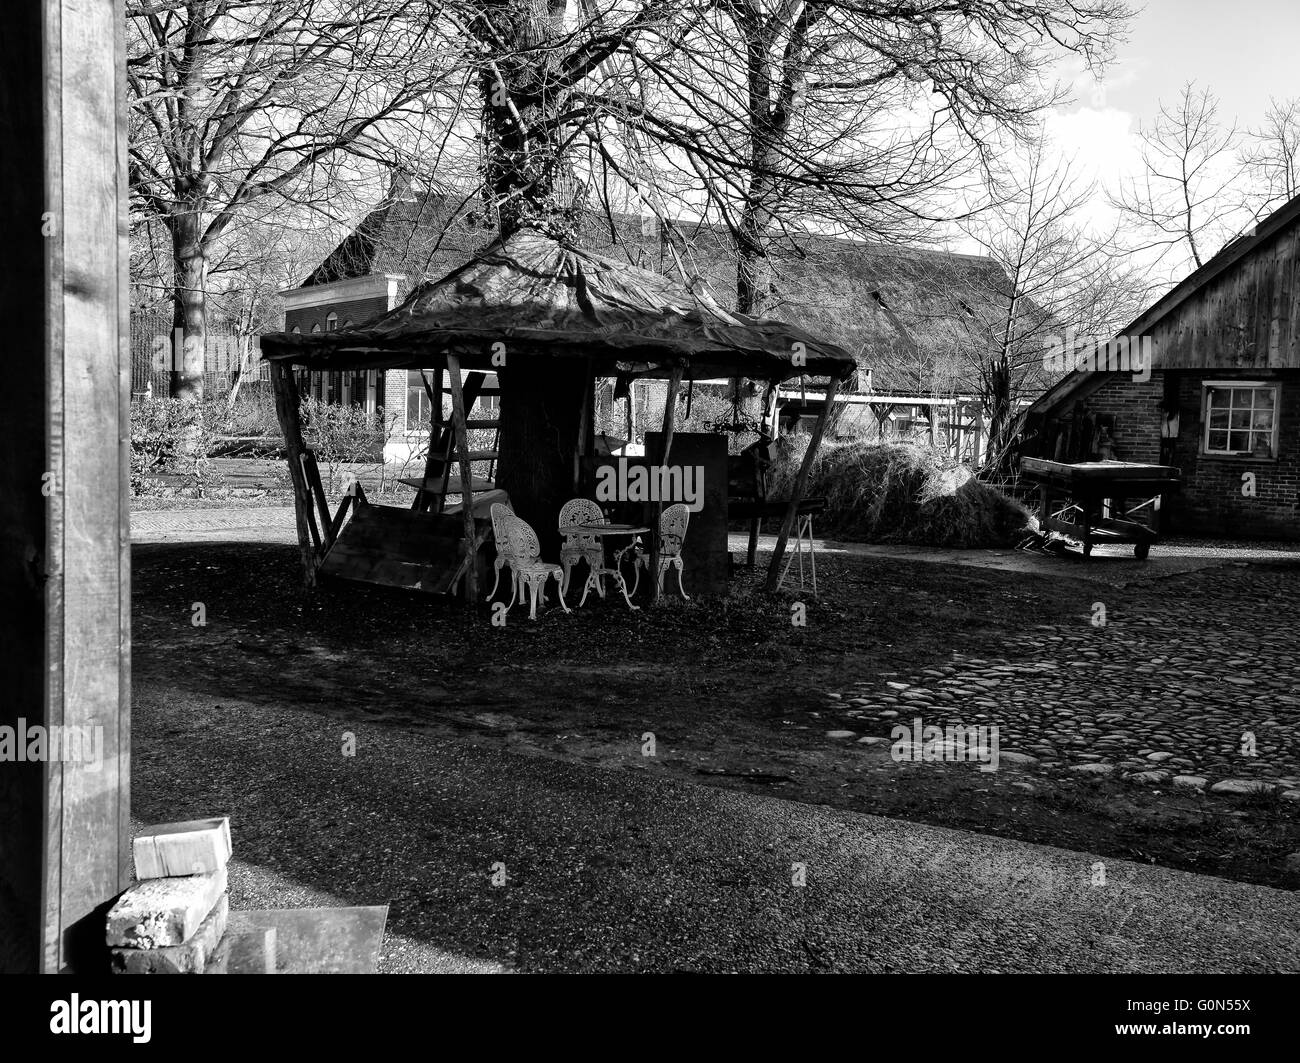 Haut contraste noir et blanc scène rurale néerlandaise avec farm house Banque D'Images